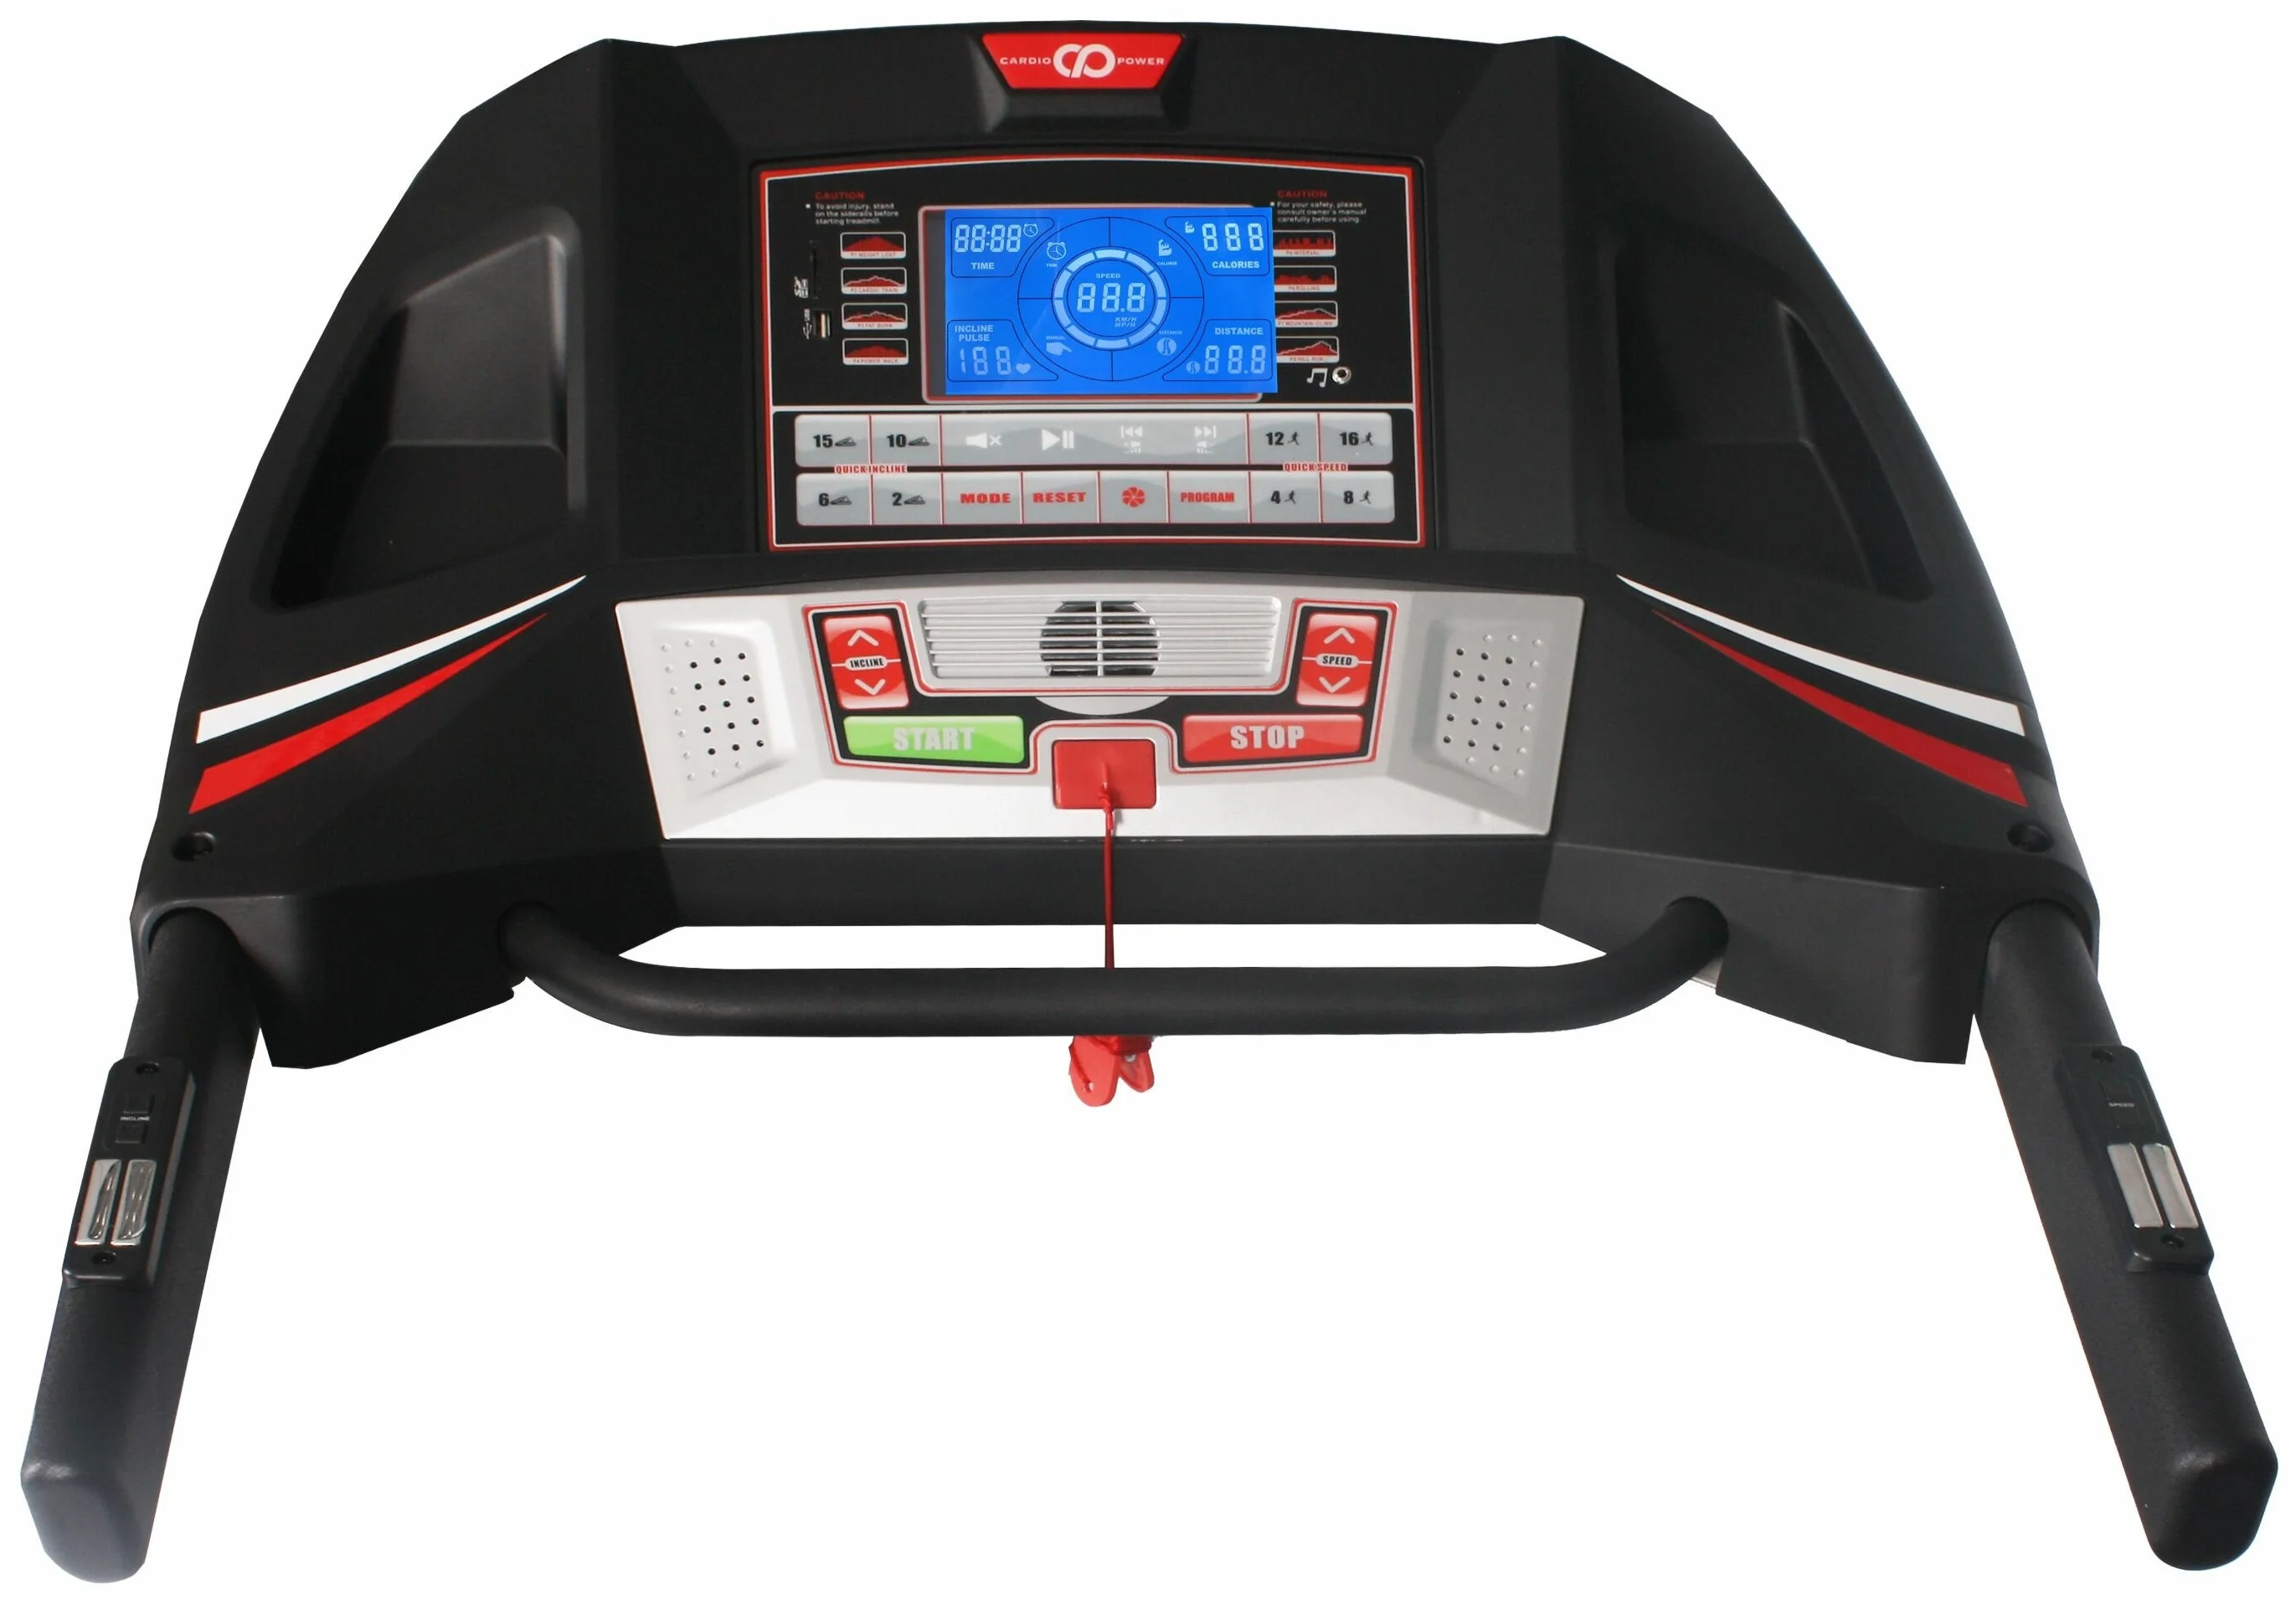 CardioPower T40 - вес пользователя до 150 кг